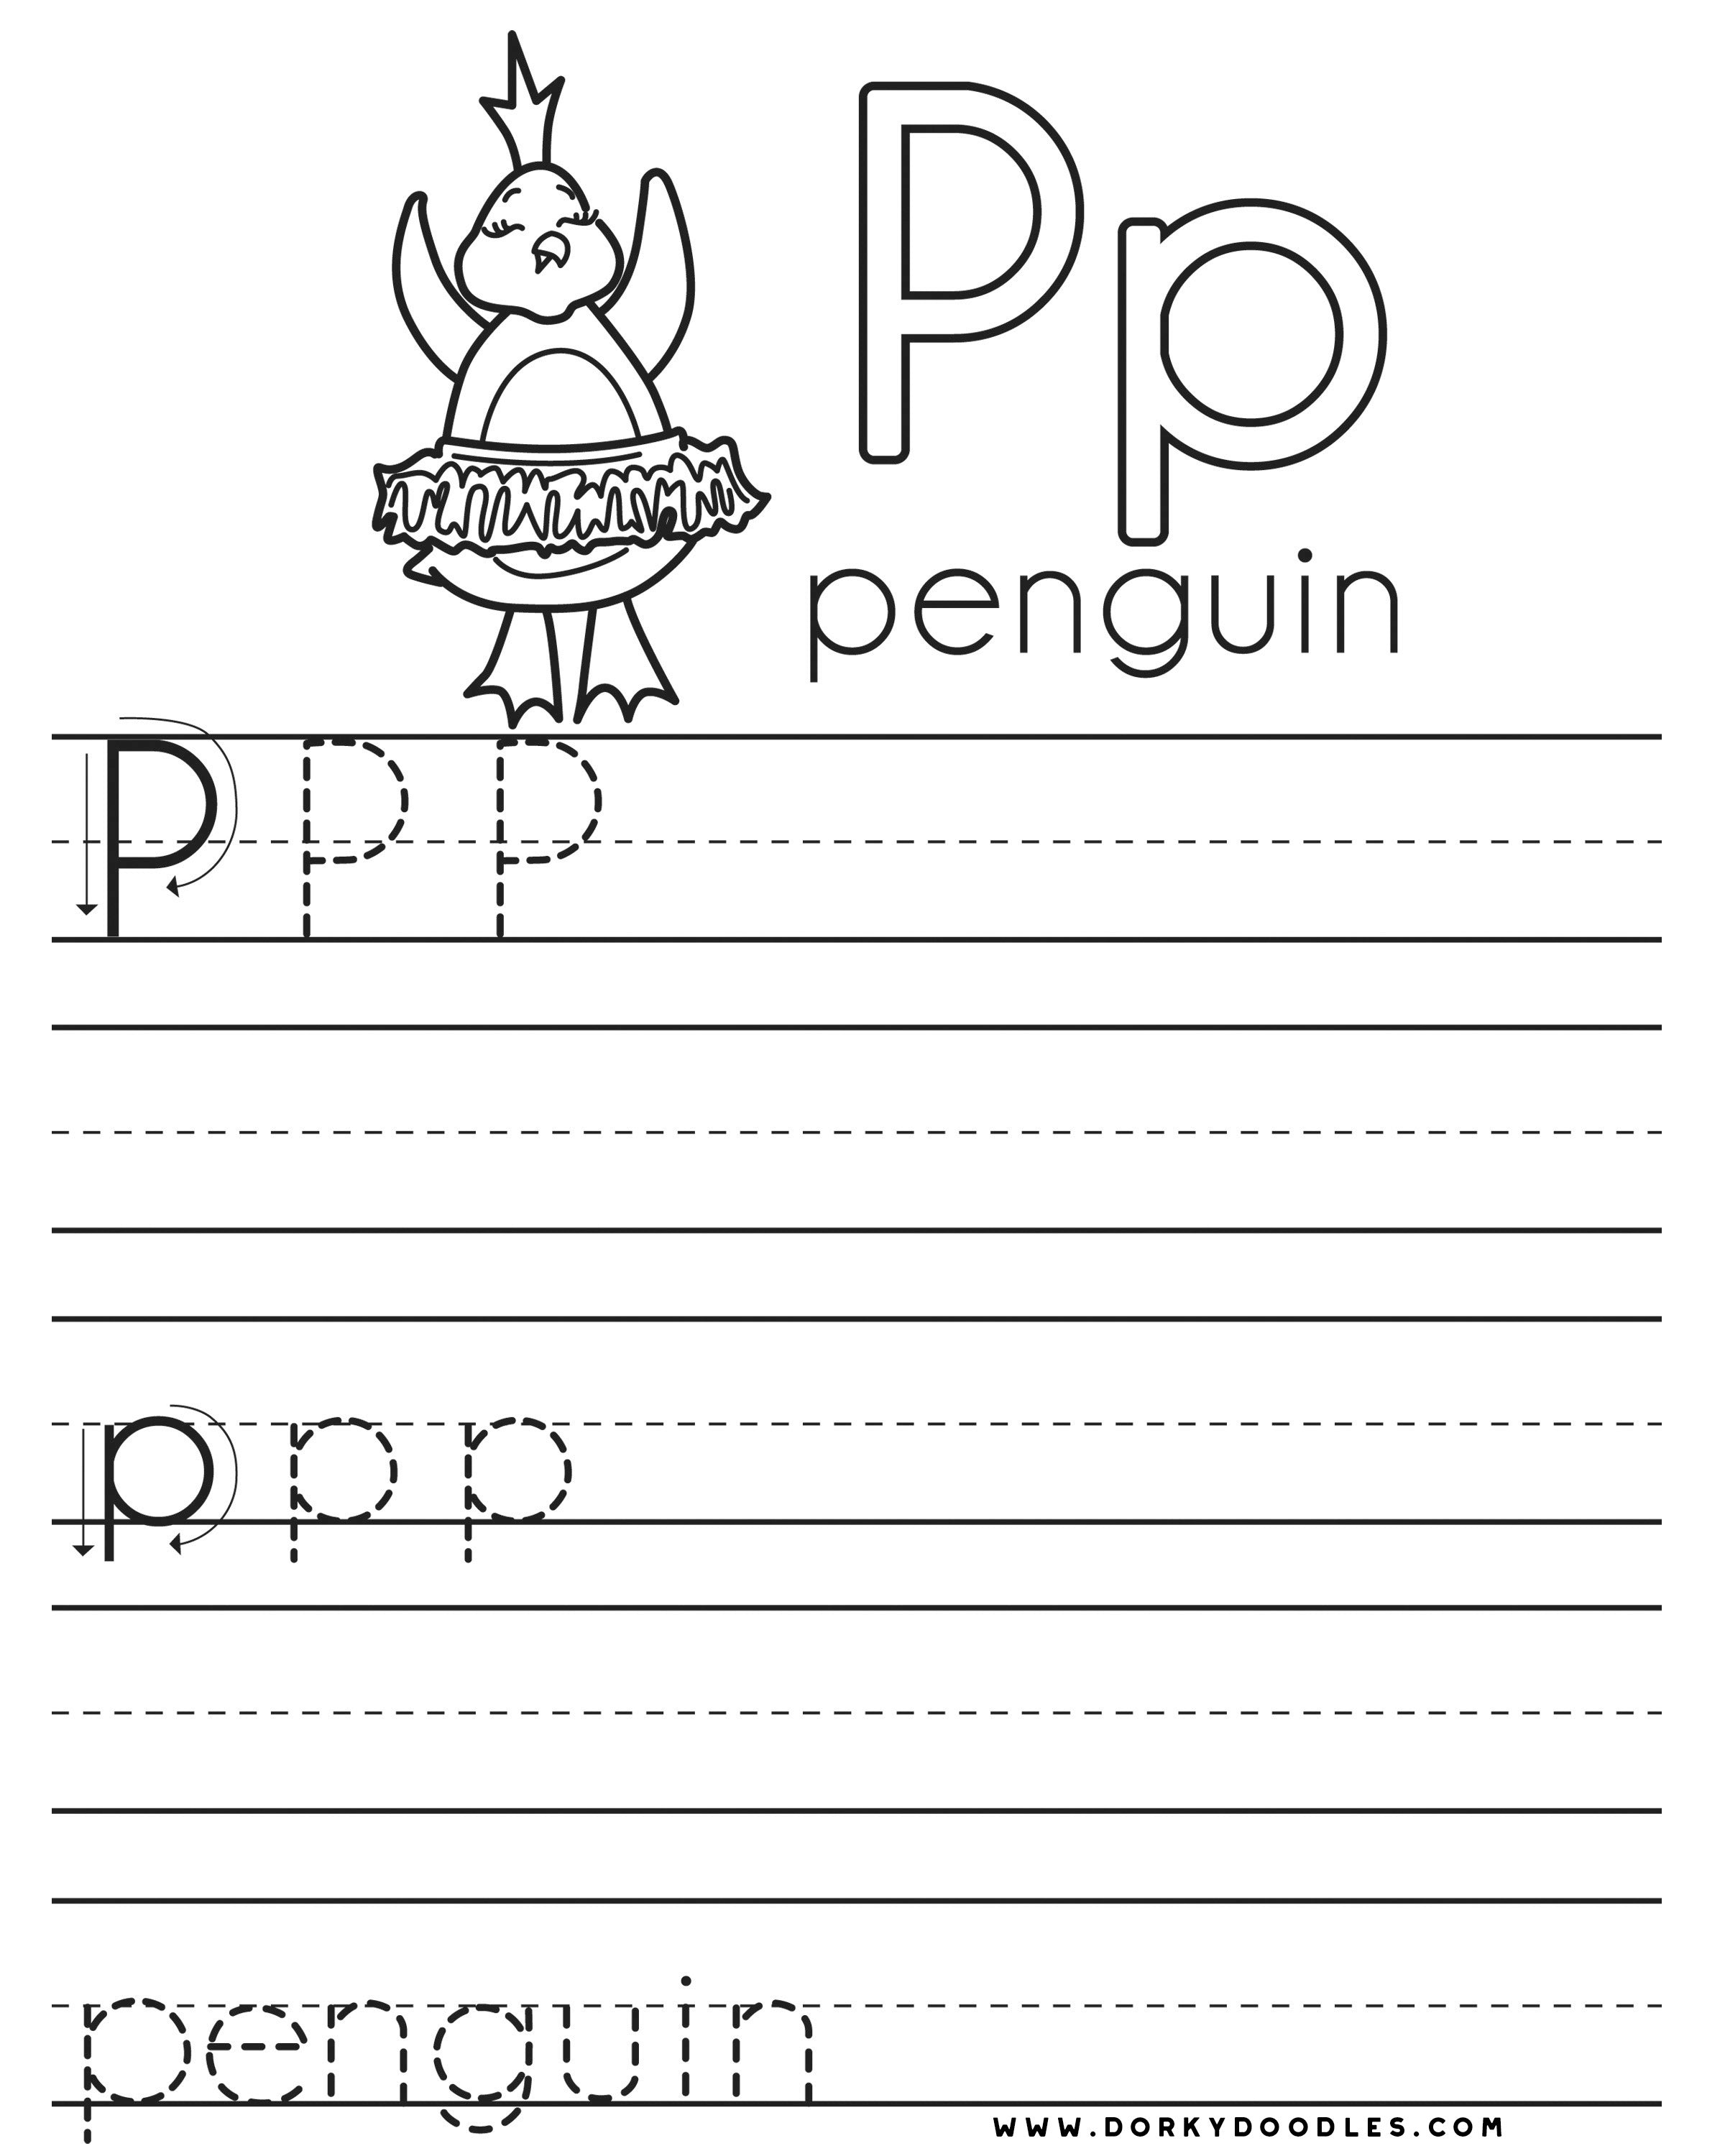 Letter practice p worksheets â dorky doodles